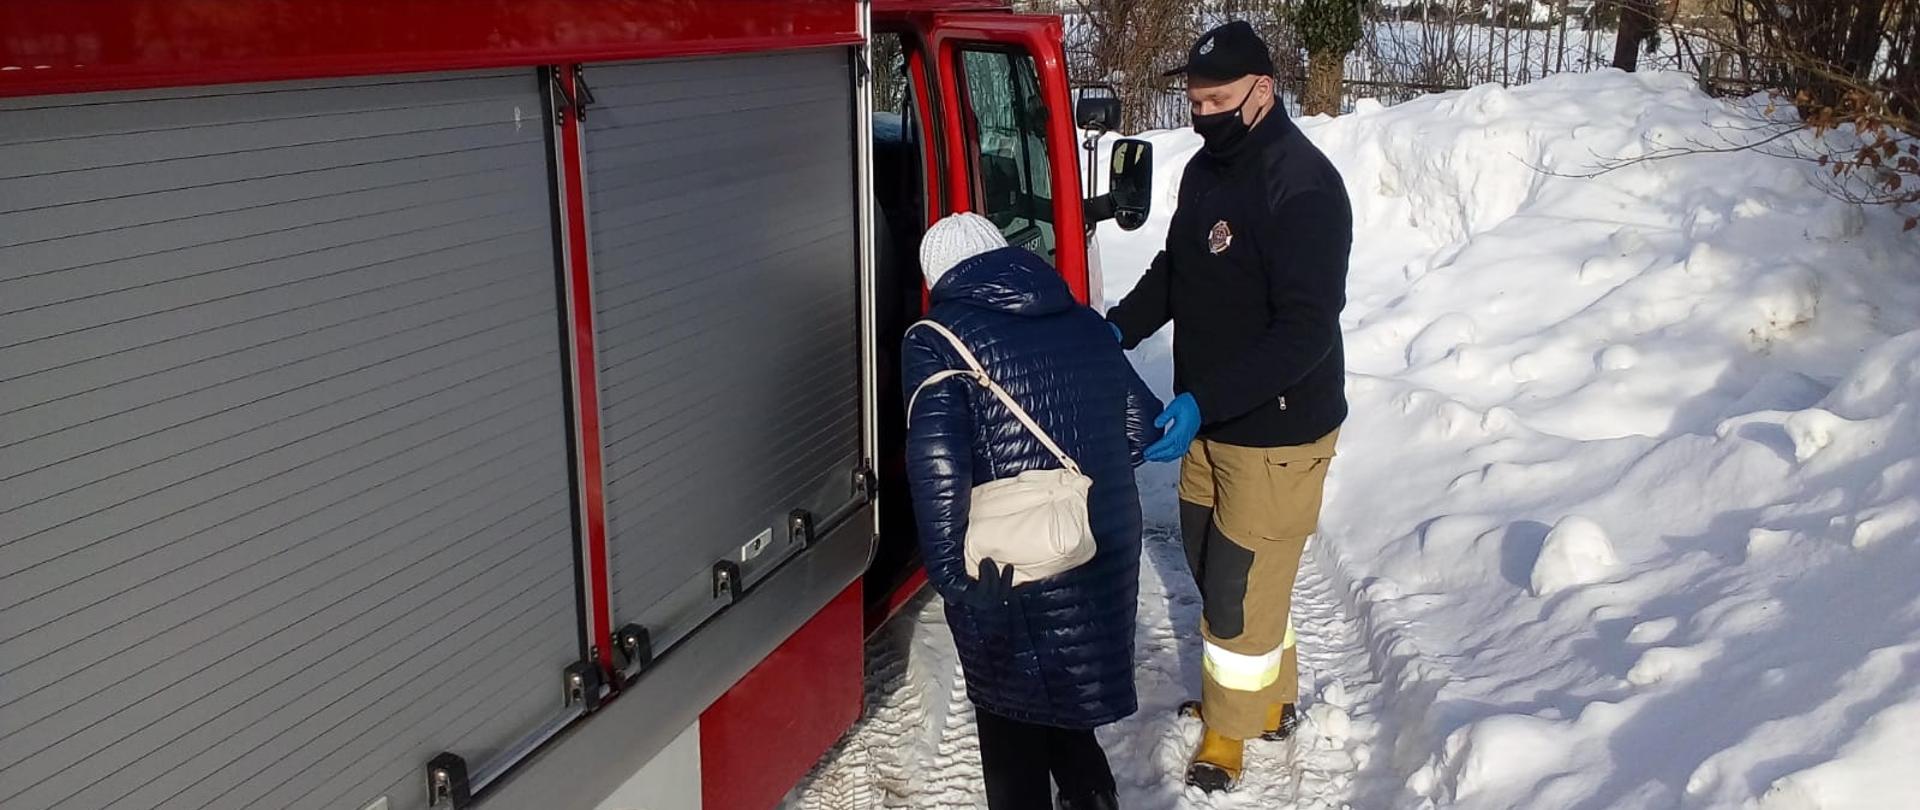 Zdjęcie przedstawia strażaka pomagającego kobiecie wejść do pojazdu pożarniczego, którym zostanie przetransportowana do punktu szczepień